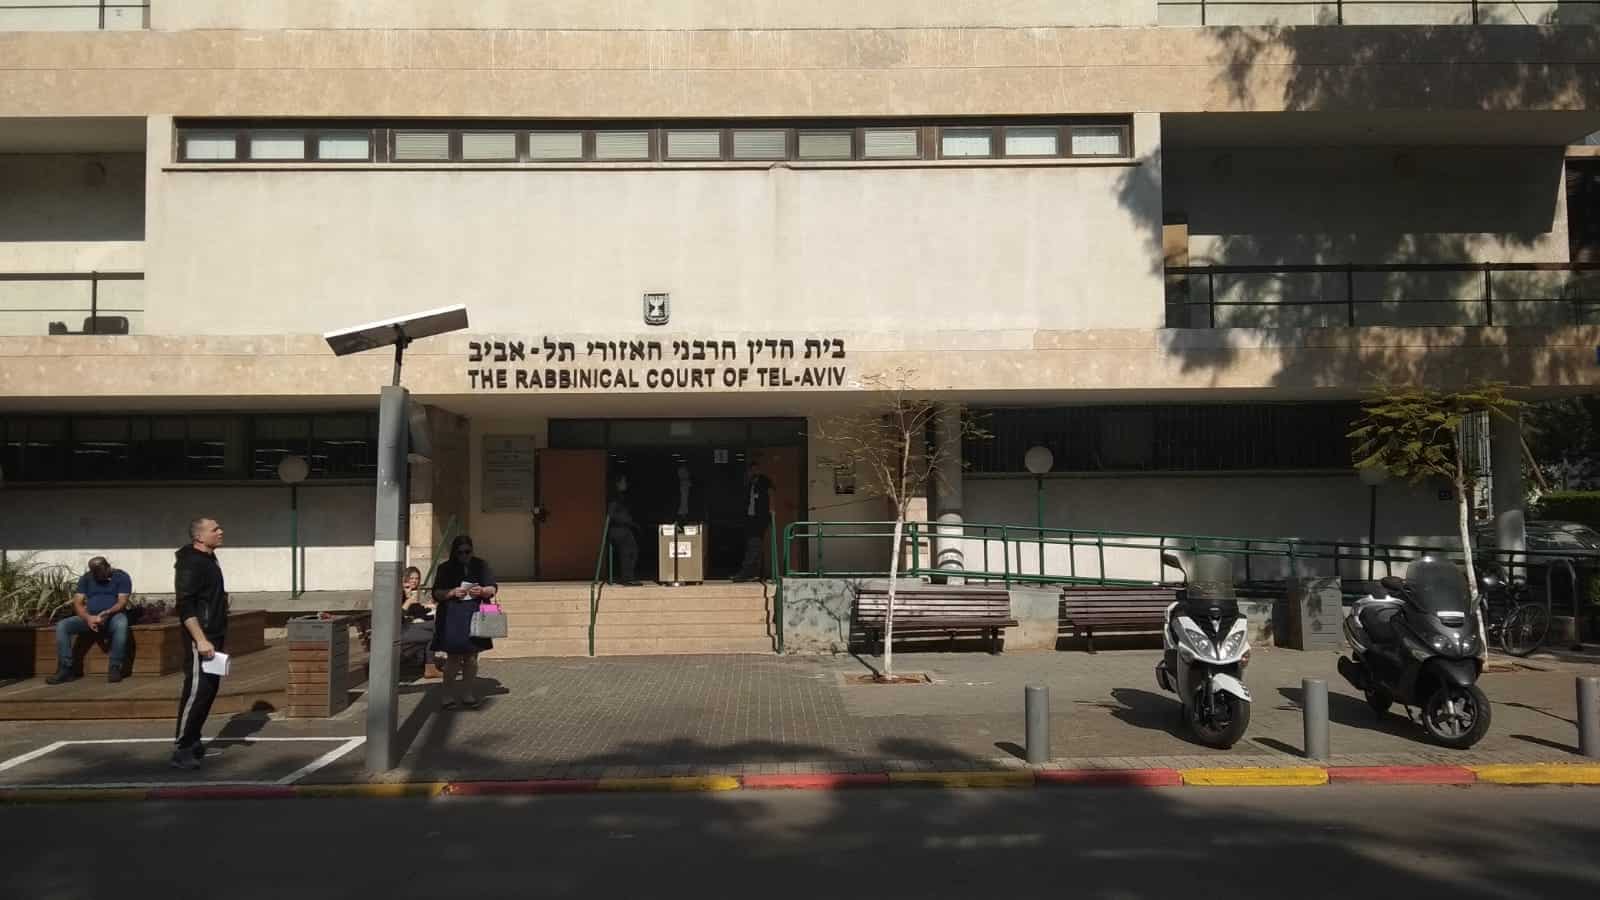 הרבנות בתל אביב. צילום רג ניוז